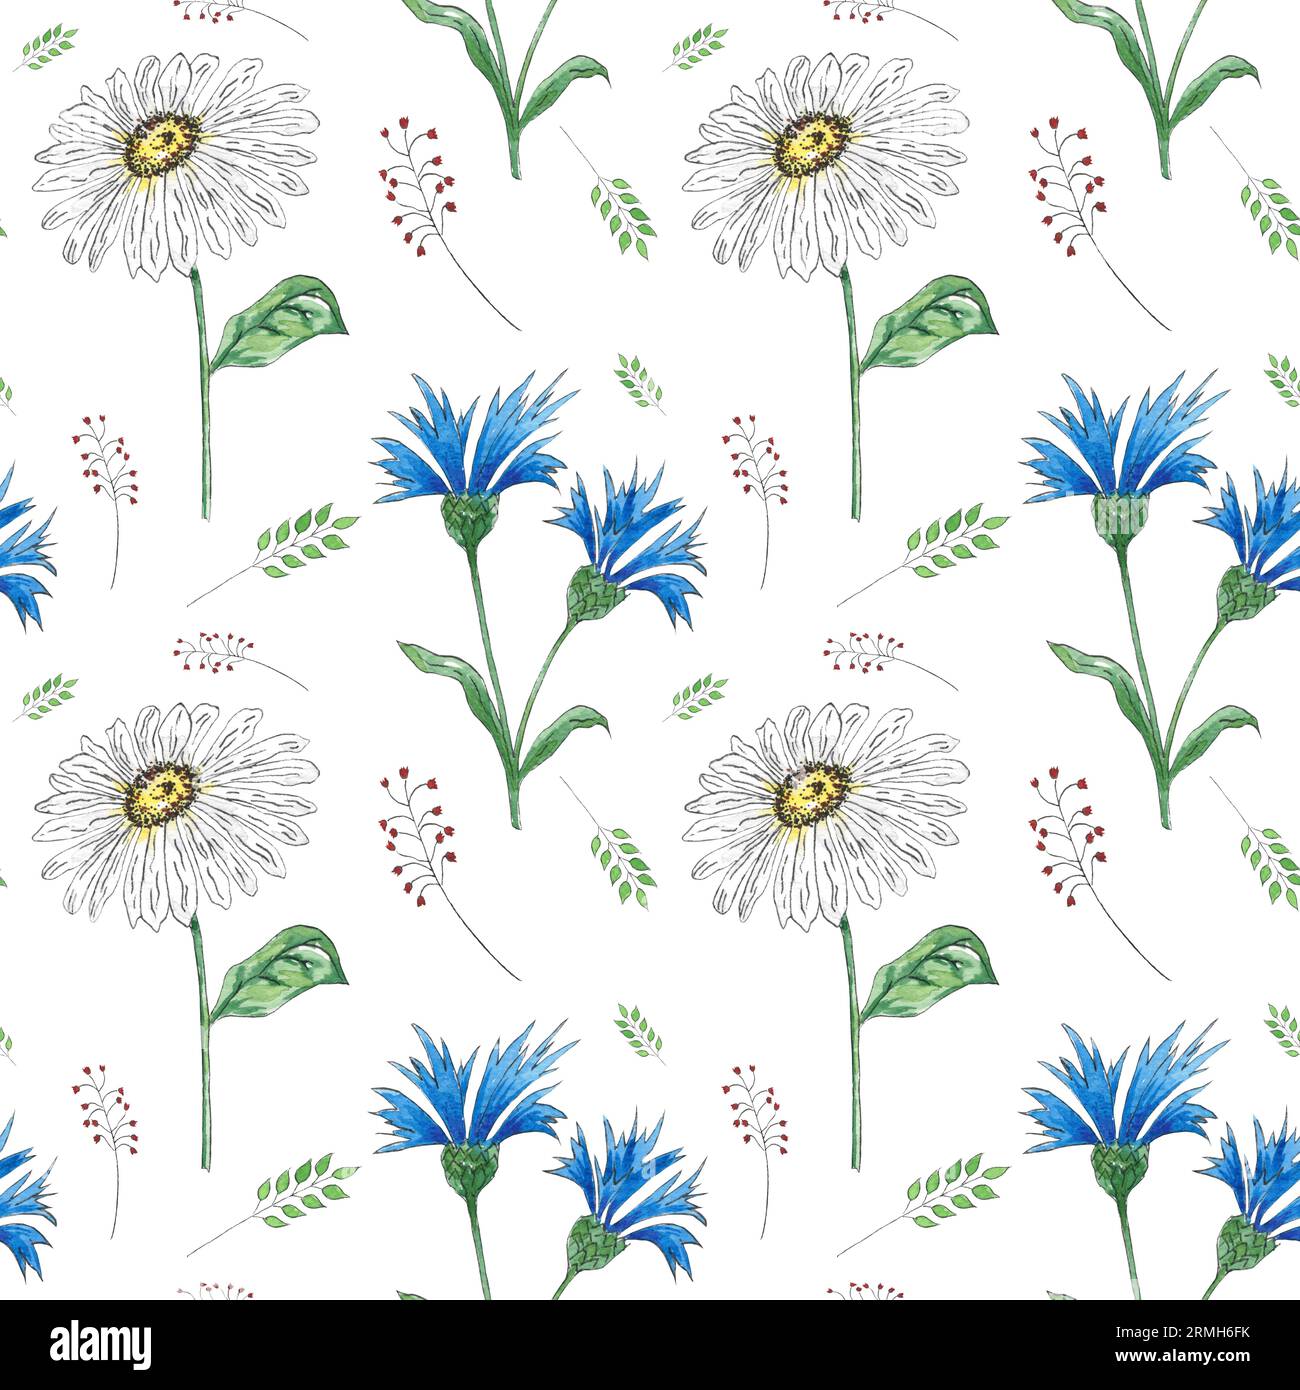 Modèle sans couture aquarelle avec des fleurs sauvages de bleuet sur fond blanc, illustration peinte à la main dans le style botanique, tissu d'impression, papier peint Banque D'Images